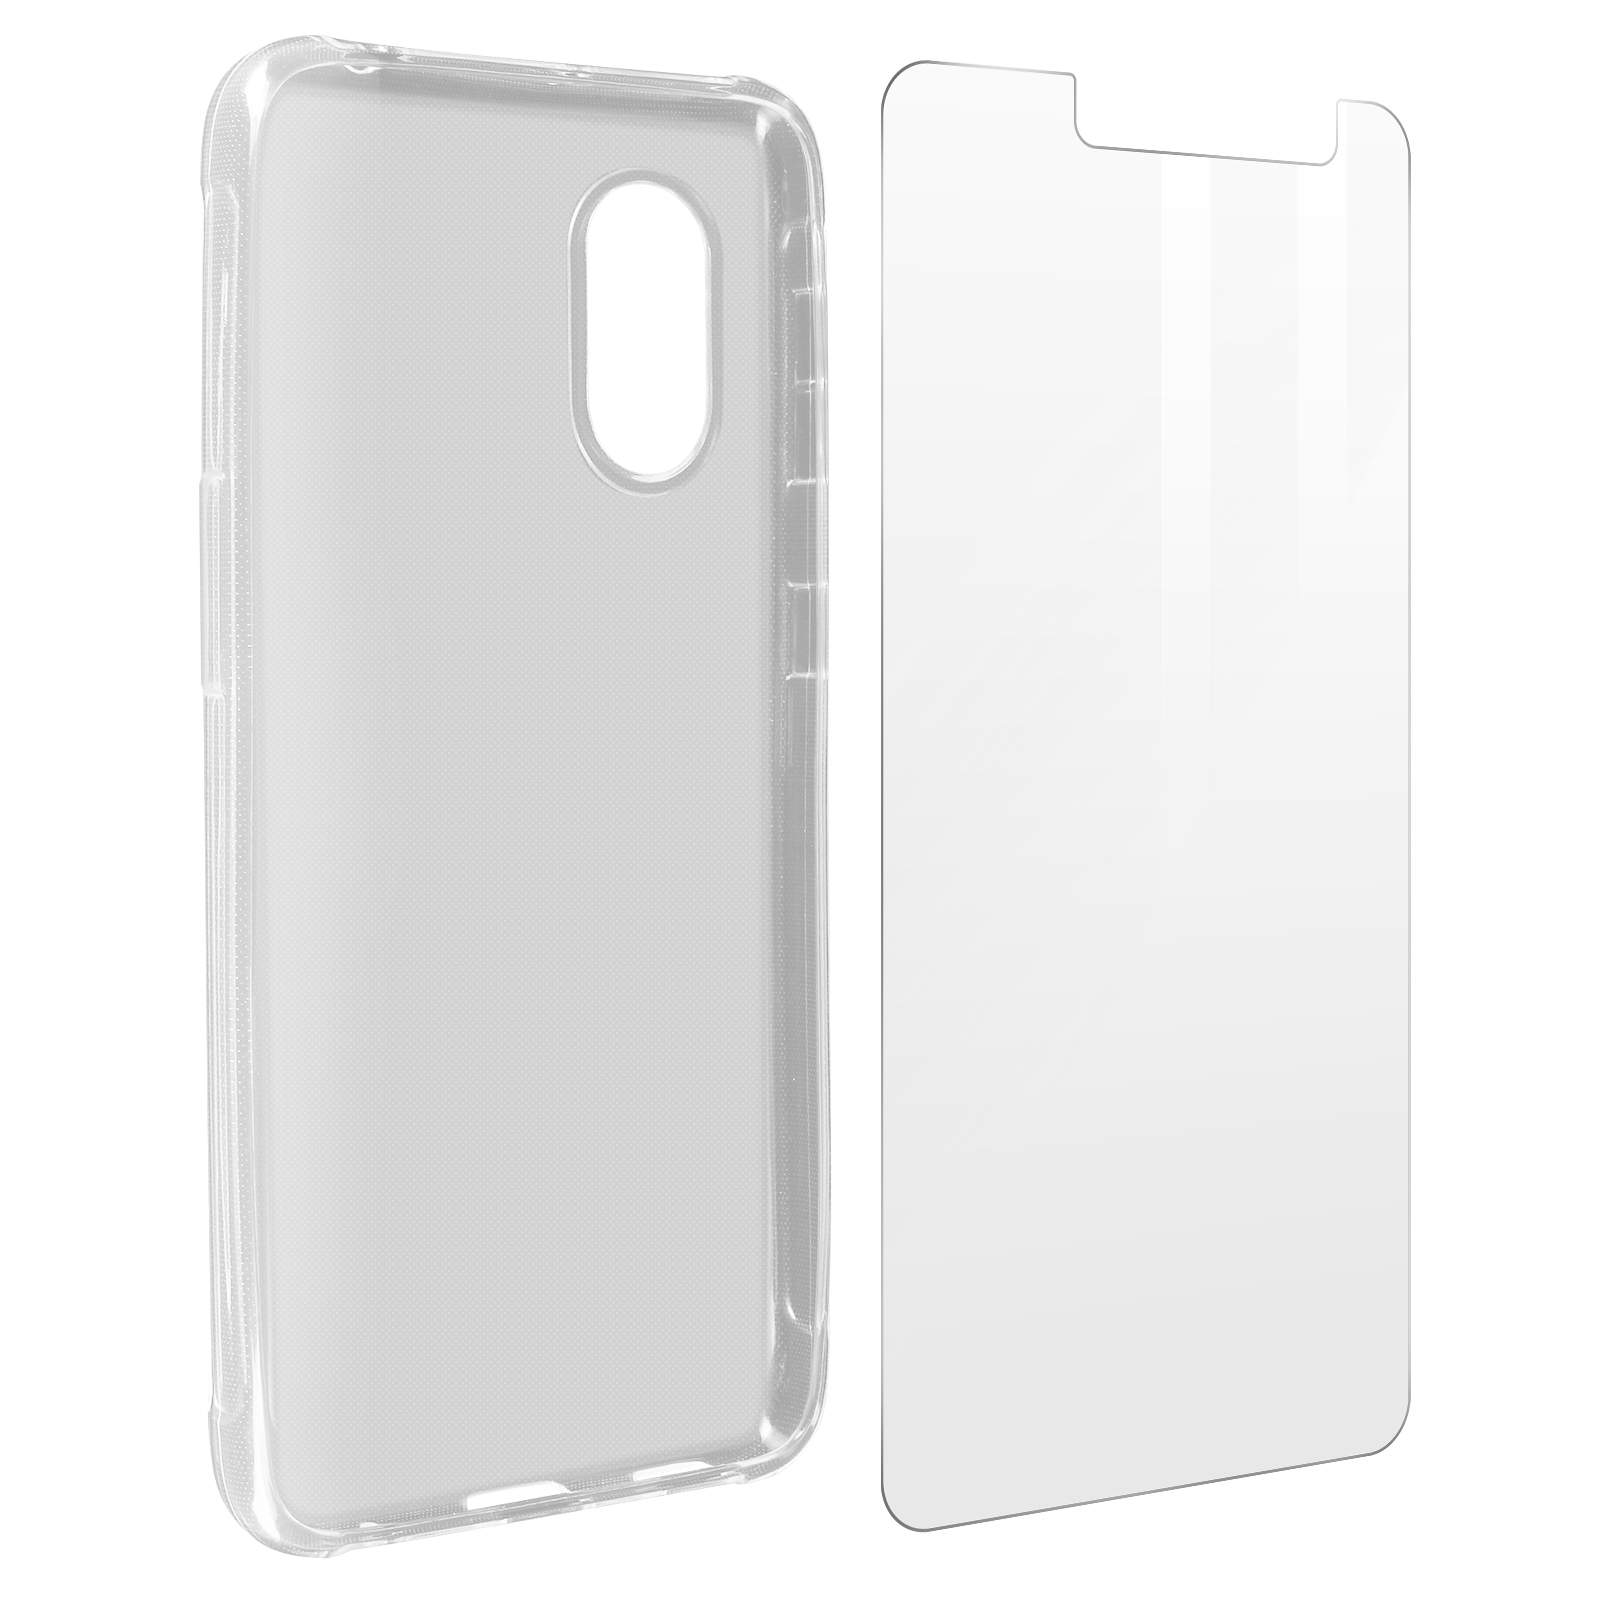 AVIZAR Backcover, Xcover Series, Transparent Galaxy 5, Samsung, Set